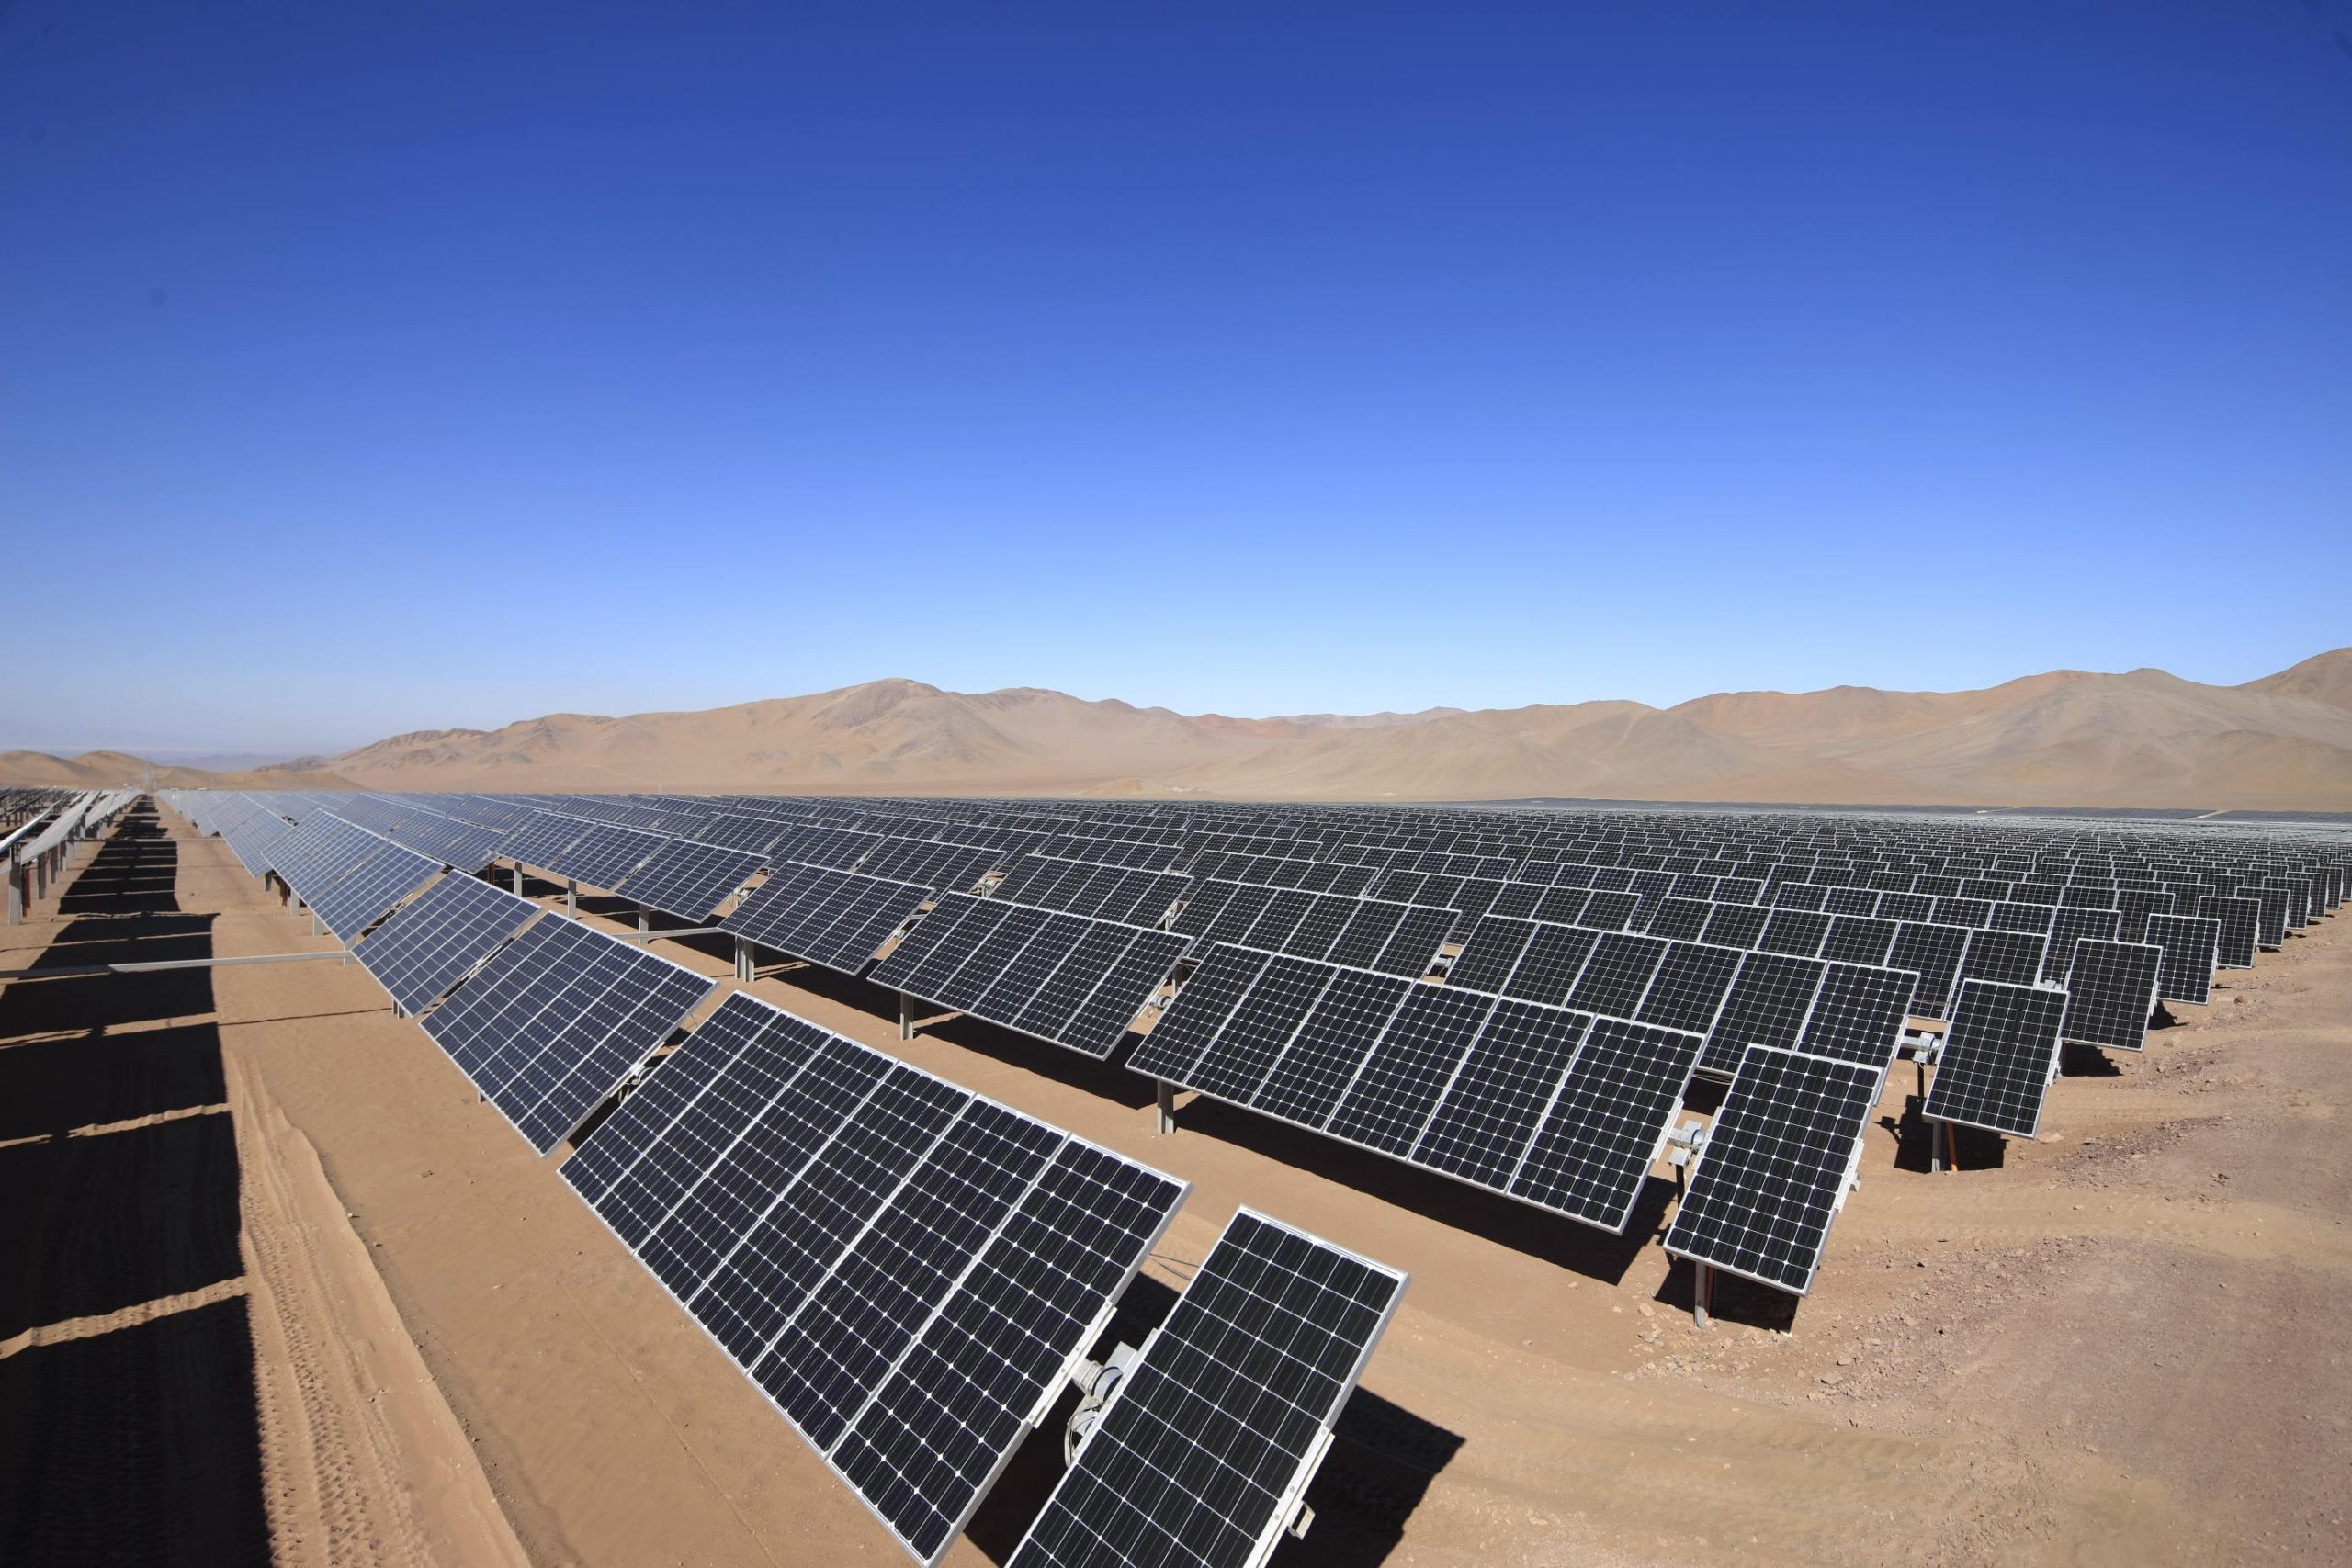 Proyectos fotovoltaicos: A fines de 2021 habrá más de 5.700 MW instalados